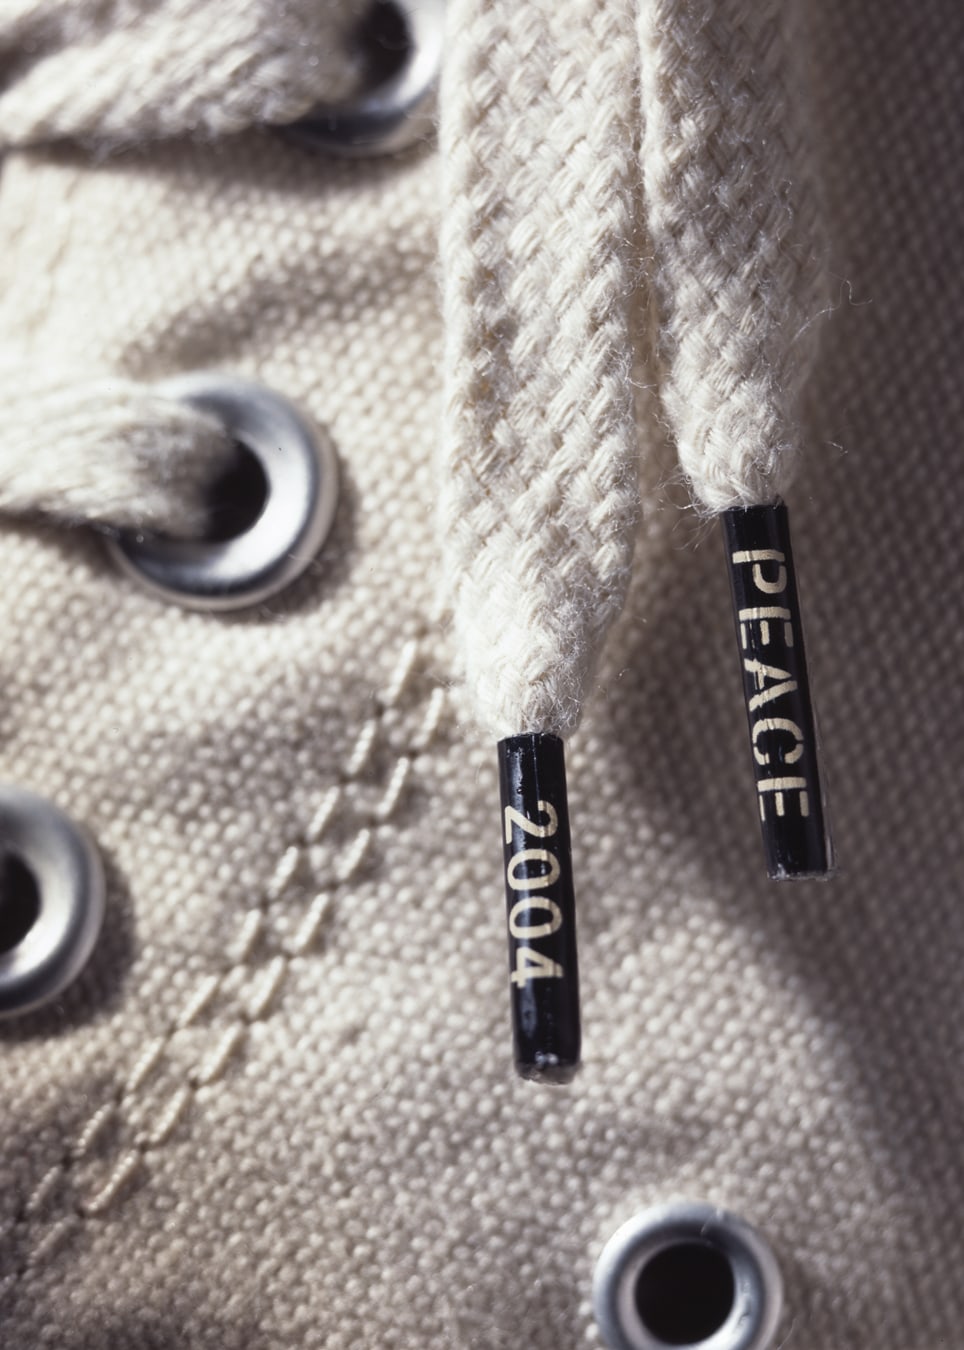 Converse Chuck Taylor Peace Shoe lace aglet detail